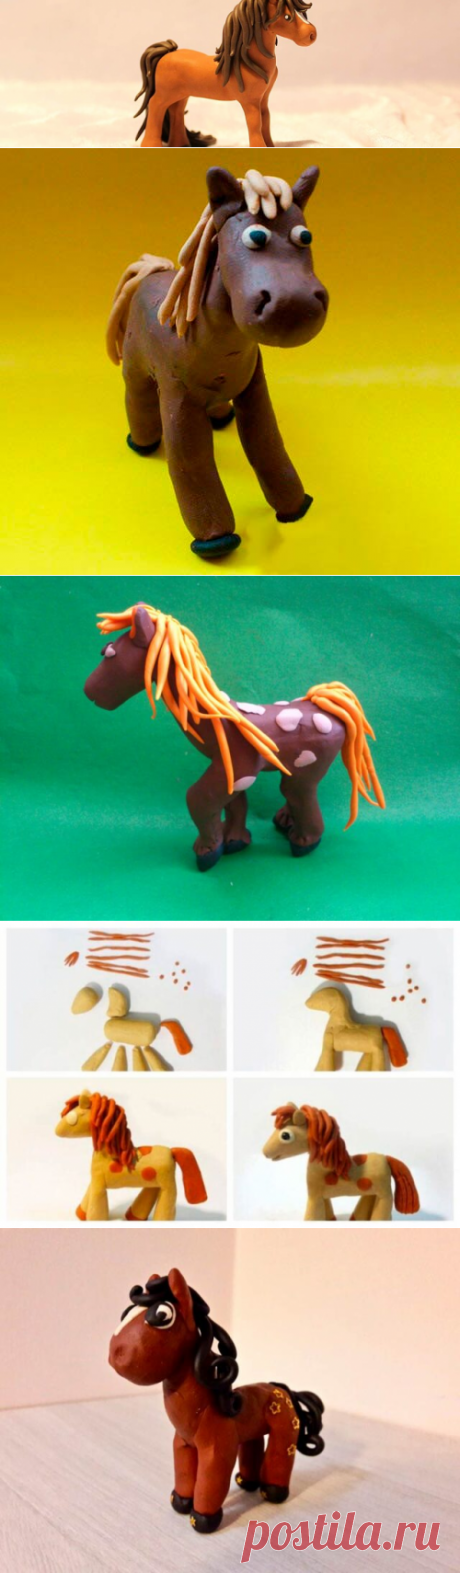 Лошадь из пластилина, слепить долговязую лошадку для детей: поделки коня и дымковской лошадки - поэтапная лепка своими руками с пошаговыми фото и видео мастер классами